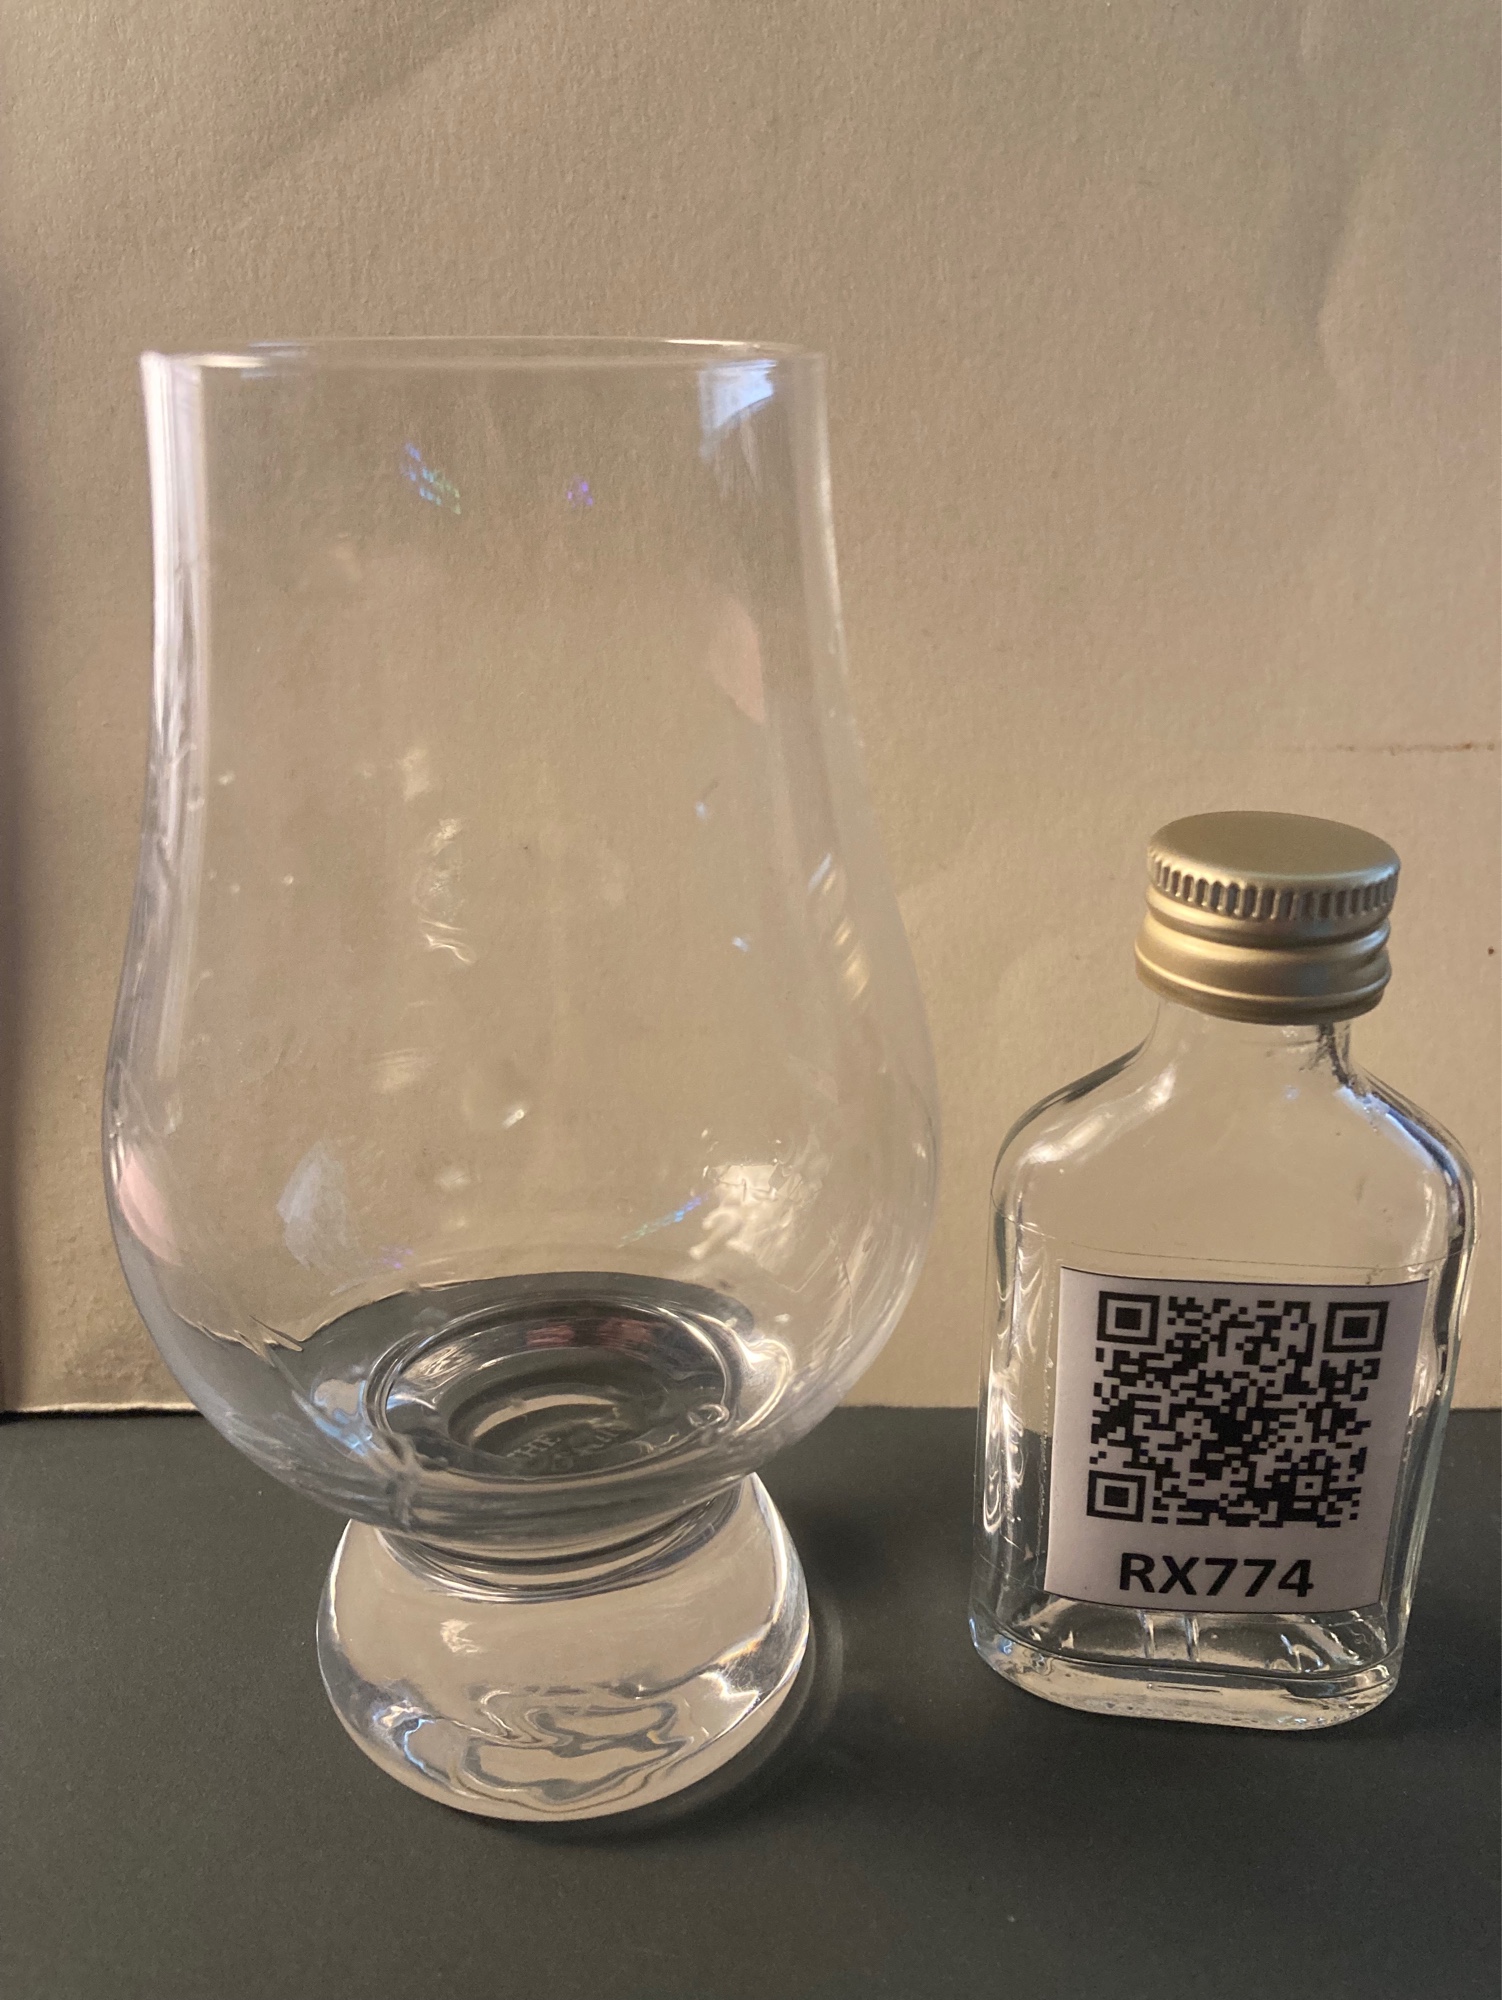 Photo of the bottle taken from user HenryL